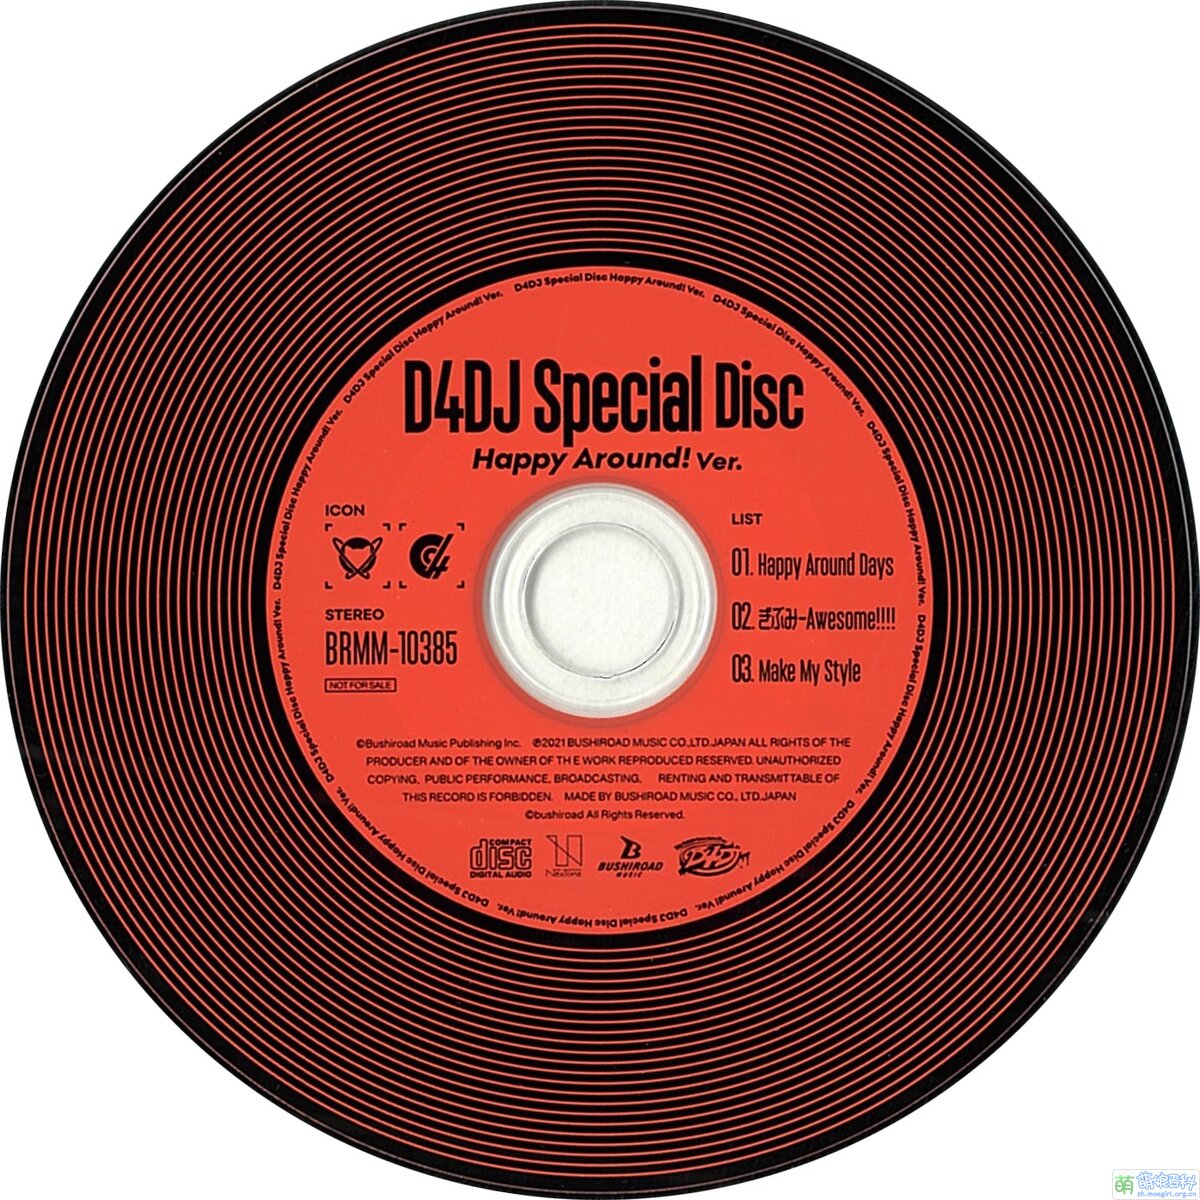 D4DJ Special Disc - 萌娘百科万物皆可萌的百科全书